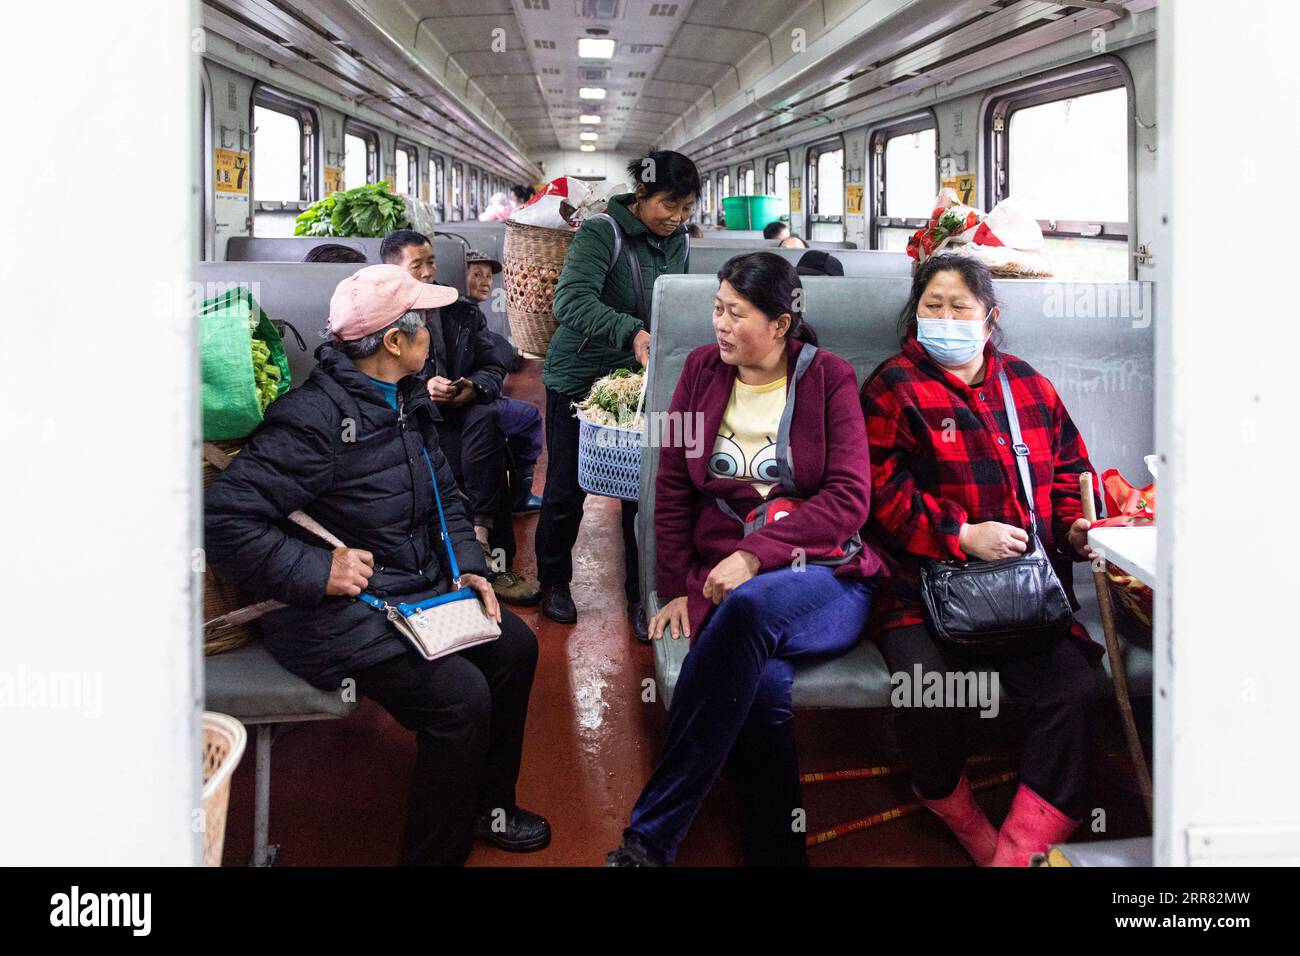 210414 -- CHANGSHA, 14 aprile 2021 -- i passeggeri parlano sul treno 7266 nella provincia centrale di Hunan della Cina, 11 aprile 2021. I treni 7265/7266/7267 iniziarono a funzionare nel 1995, estendendosi per più di 300 chilometri dalla stazione di Huaihua alla stazione di Lixian. I treni passano 37 fermate lungo il tragitto in 9 ore e 16 minuti. I prezzi dei biglietti variano da 1 yuan a 23,5 yuanabout 0,15-3,59 dollari americani, che non sono stati aumentati in 26 anni. I treni attraversano le Wuling Mountains. Grazie a loro, gli abitanti del villaggio non solo possono portare in vendita frutta, verdura e altri prodotti locali, ma anche me Foto Stock